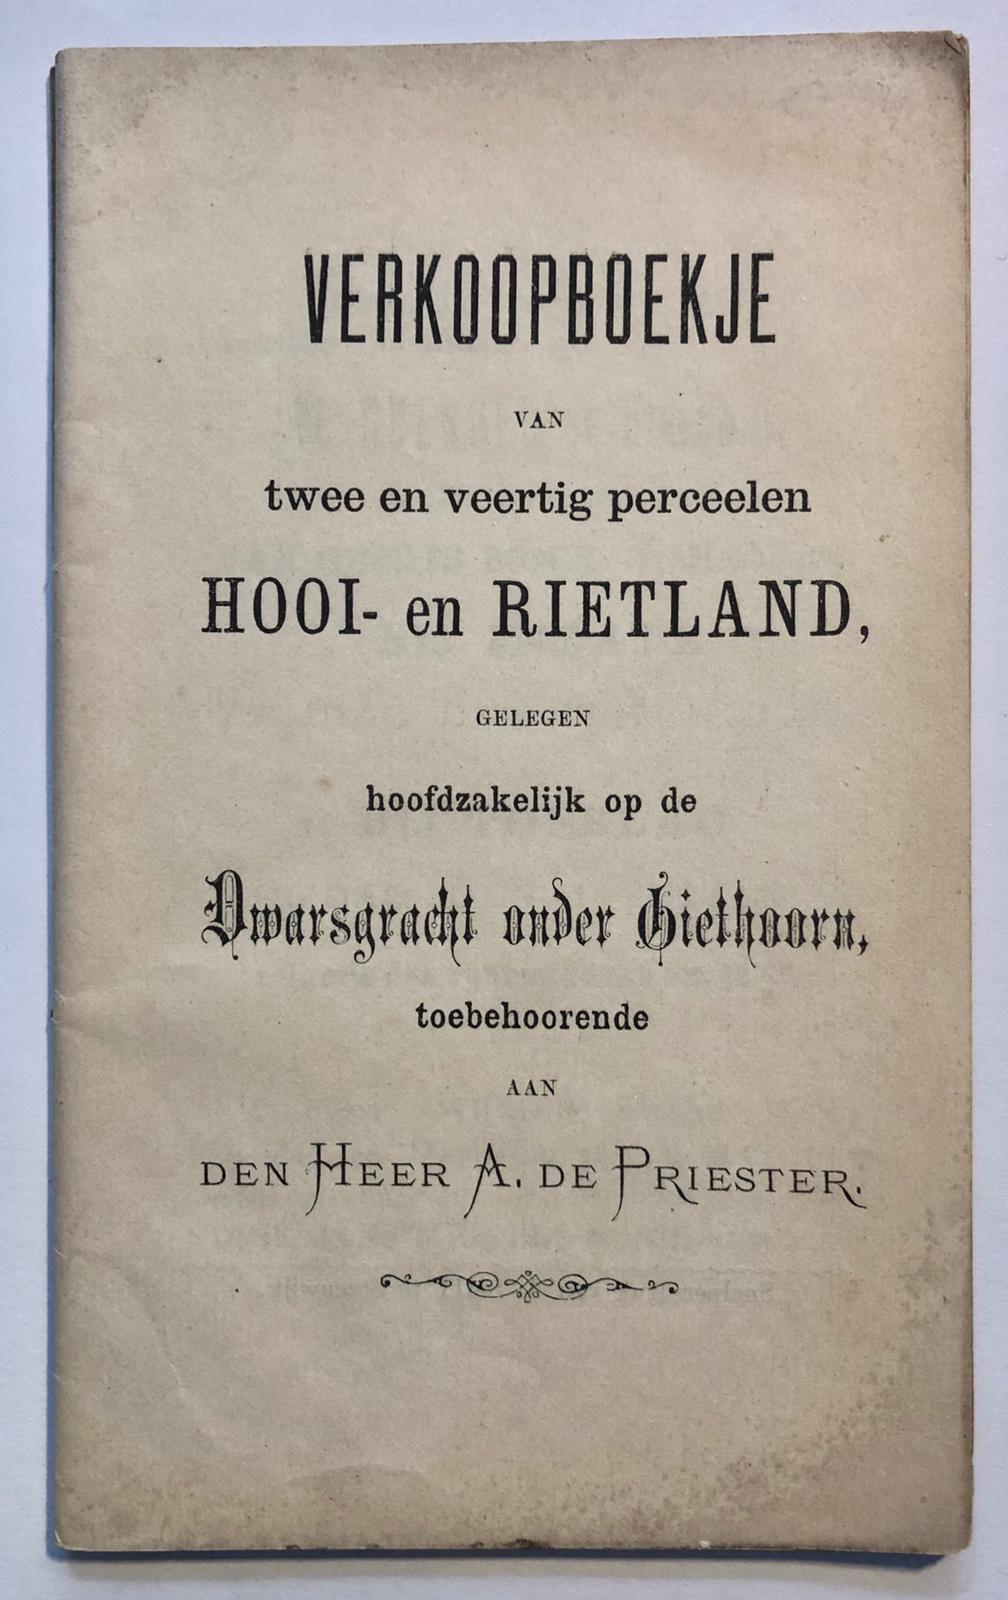 [VEILINGBOEKJE ONROEREND GOED] - [Veilingboekje betreffende onroerend goed Giethoorn, Overijssel] Verkoopboekje van twee en veertig perceelen Hooi- en Rietland, gelegen hoofdzakelijk op de Dwarsgracht onder Giethoorn, Giethoorn 1887, 42 pp.